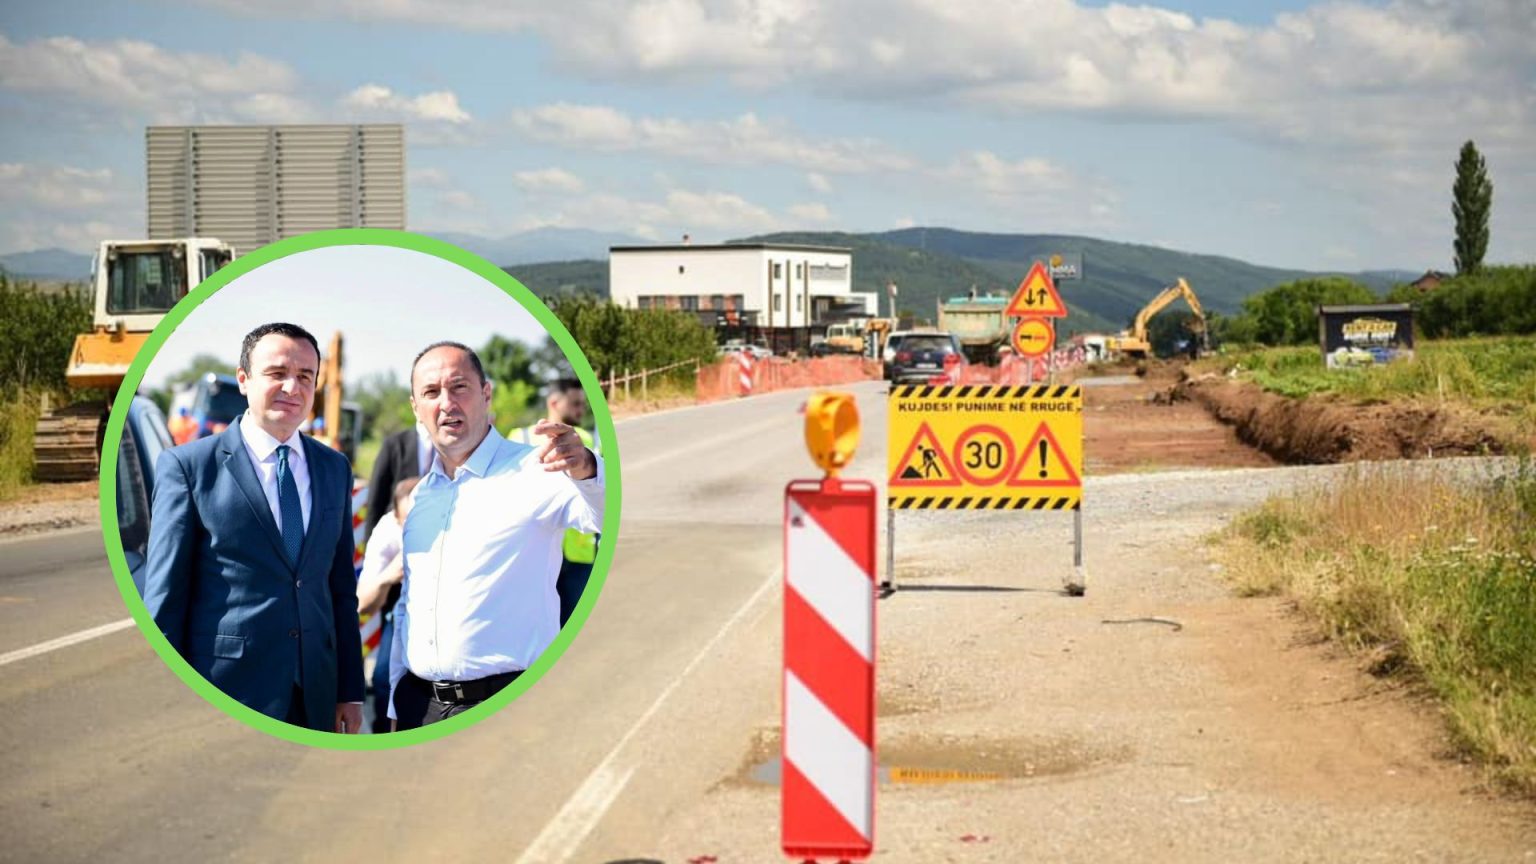  “Nuk i shti duart në zjarr”, ministri Aliu nuk garanton për afatin e vendosur nga Kurti për rrugën Prishtinë-Podujevë